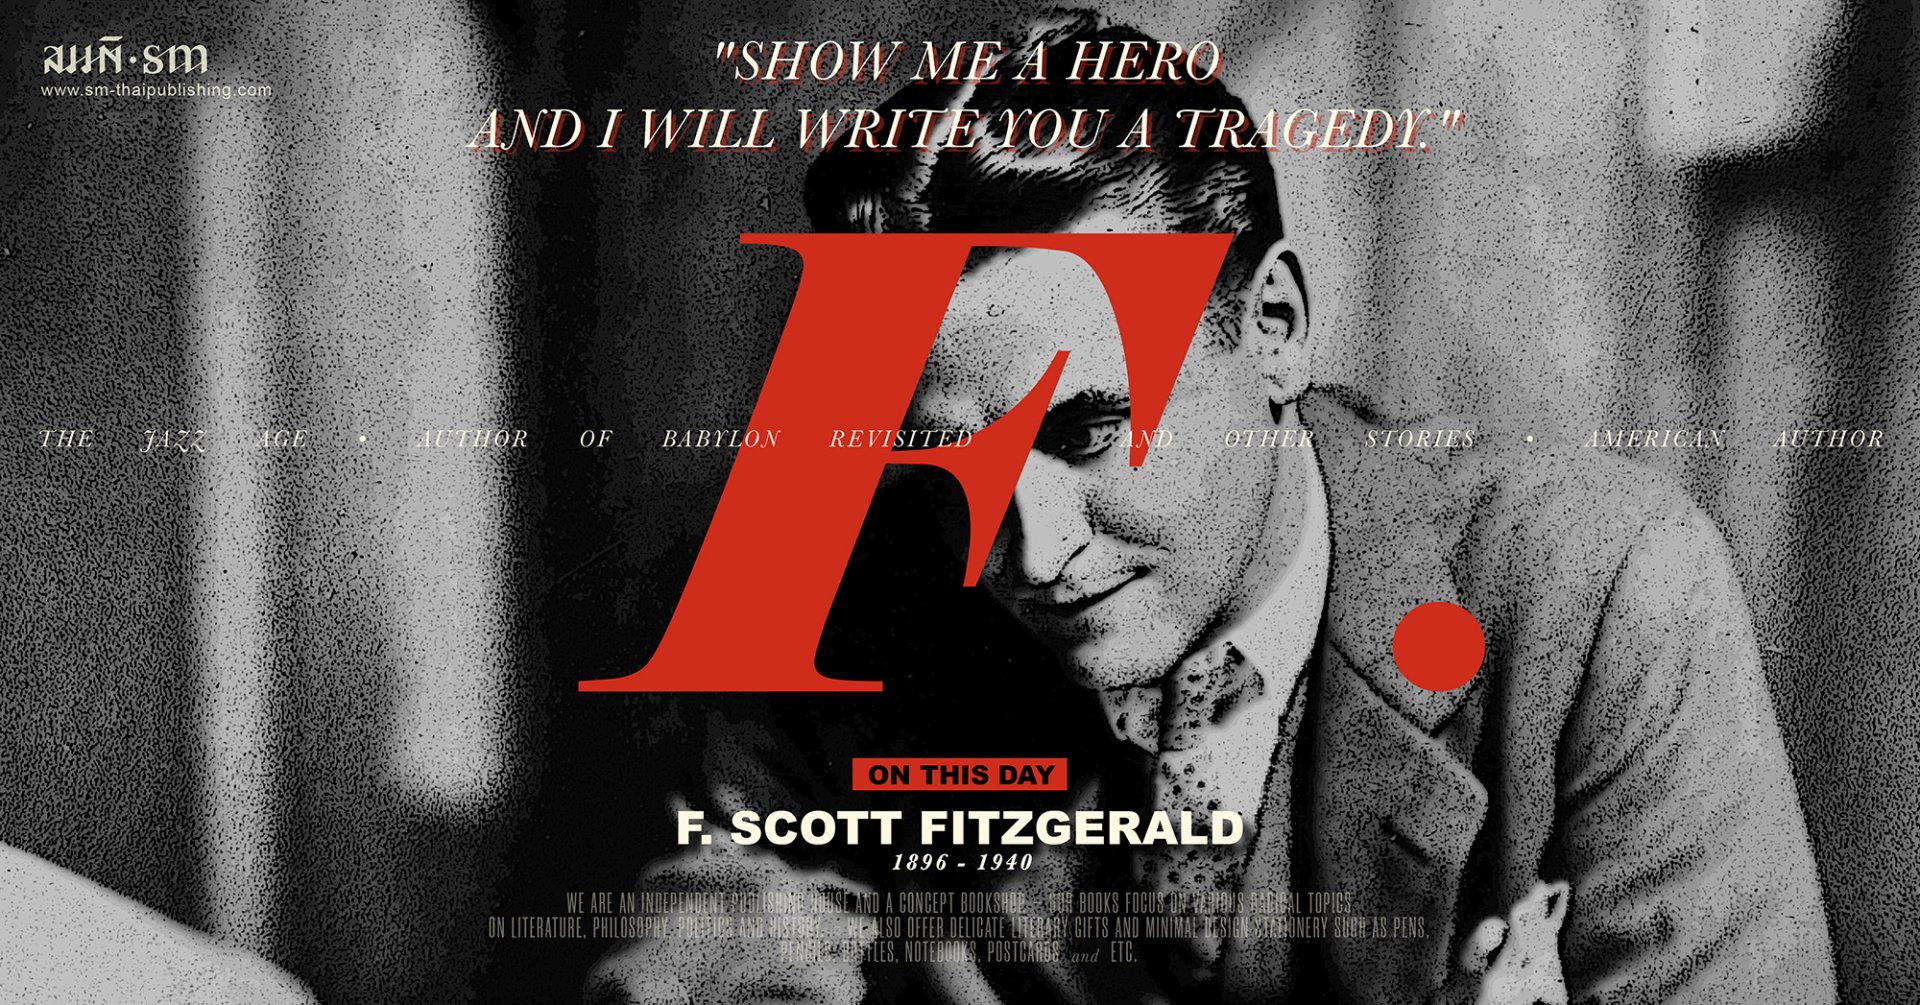 เอฟ. สก็อต ฟิตซ์เจอรัลด์ (F. Scott Fitzgerald)